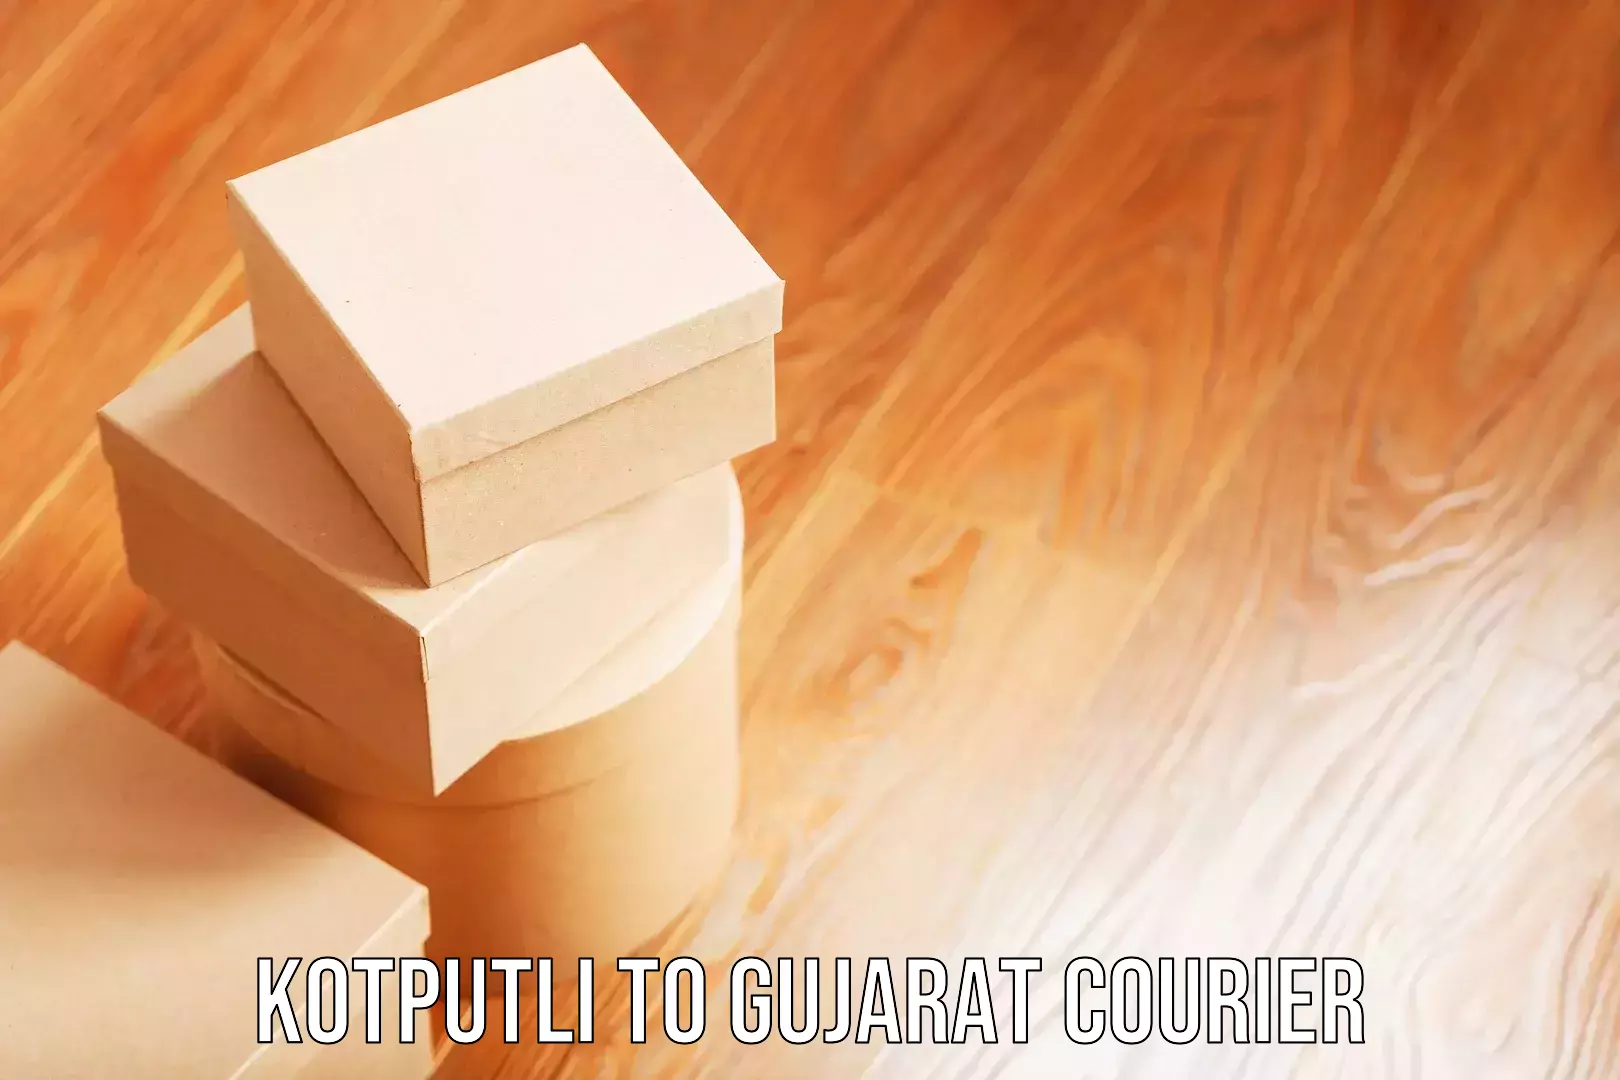 Student luggage transport Kotputli to Surat